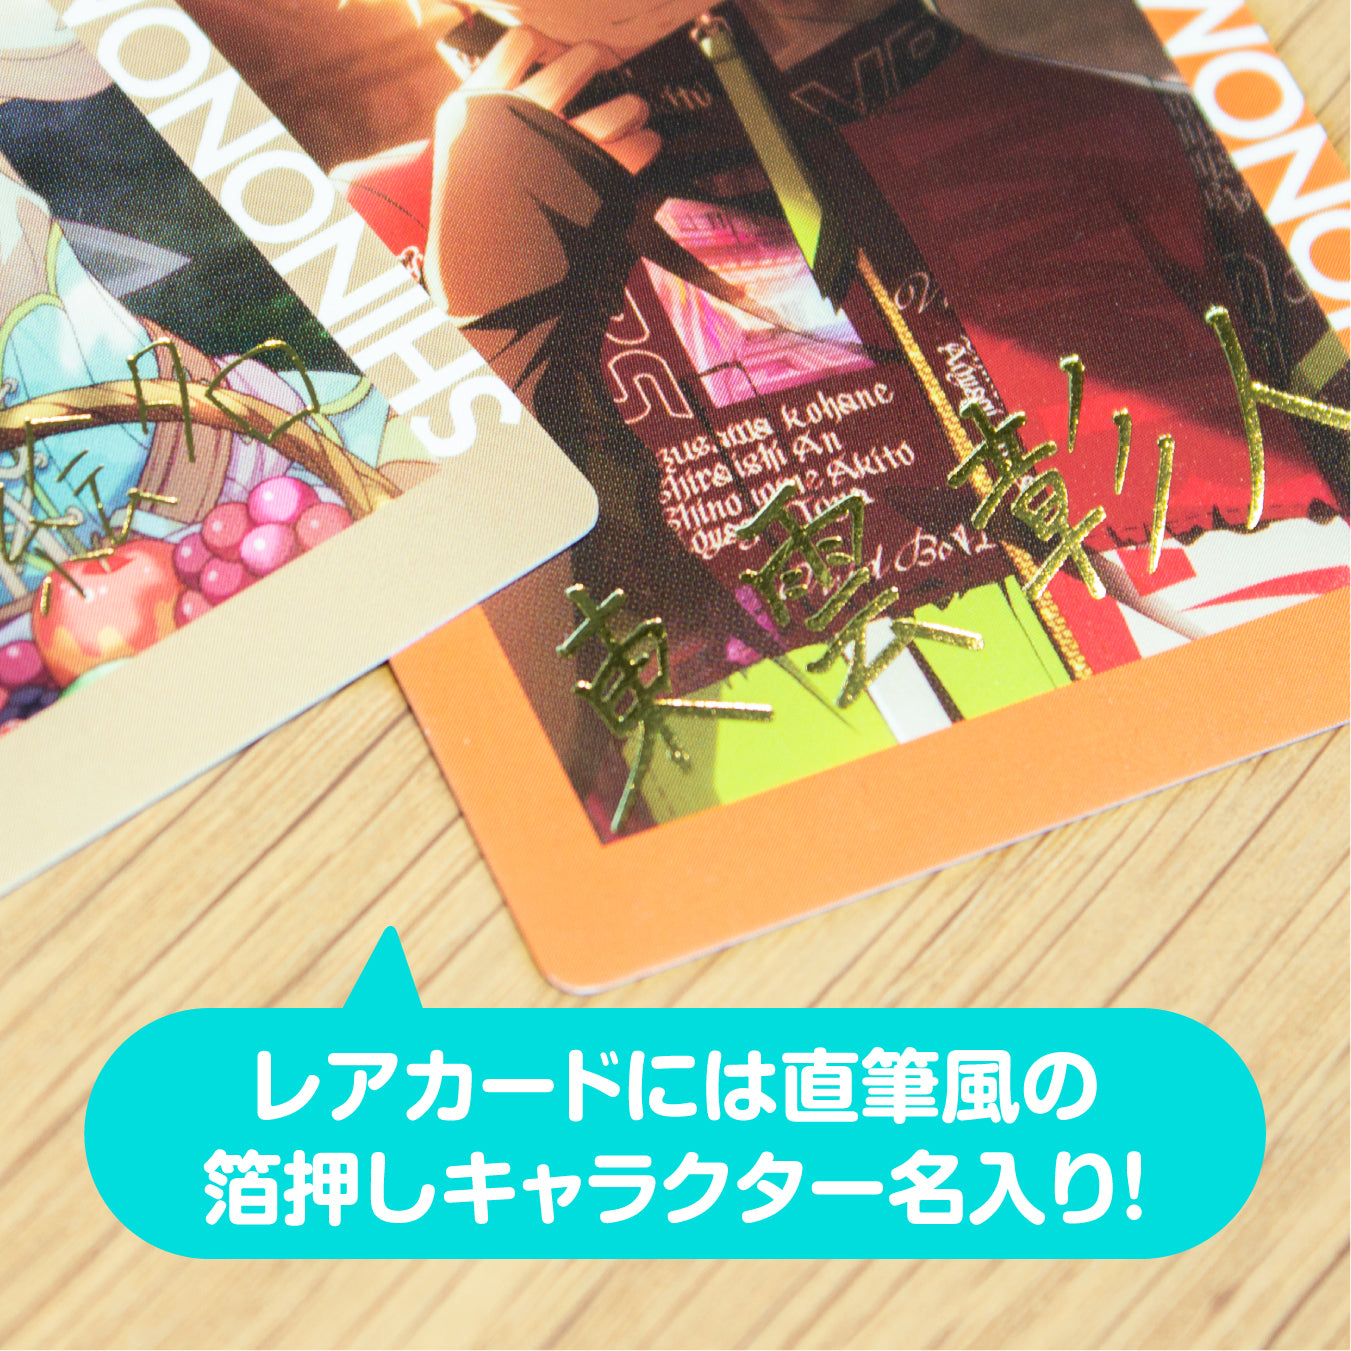 【予約商品】ePick card series vol.6 A BOX 特典付き［青柳 冬弥］